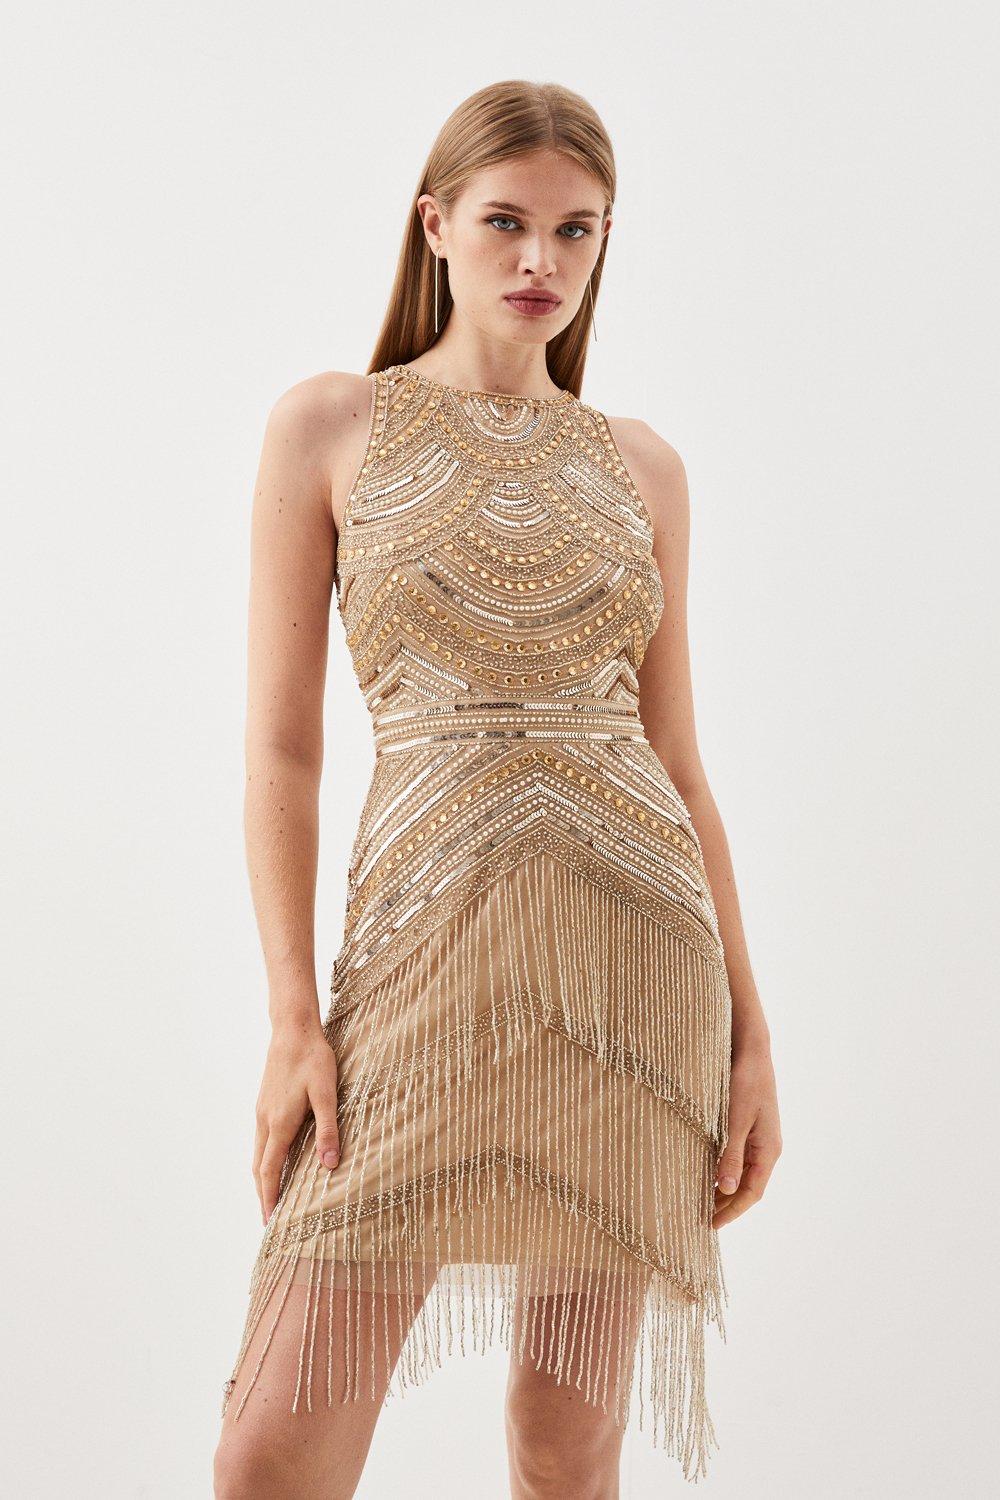 Мини-платье с бретелькой на шее, расшитое бисером и украшенное плетеной бахромой Karen Millen, золото